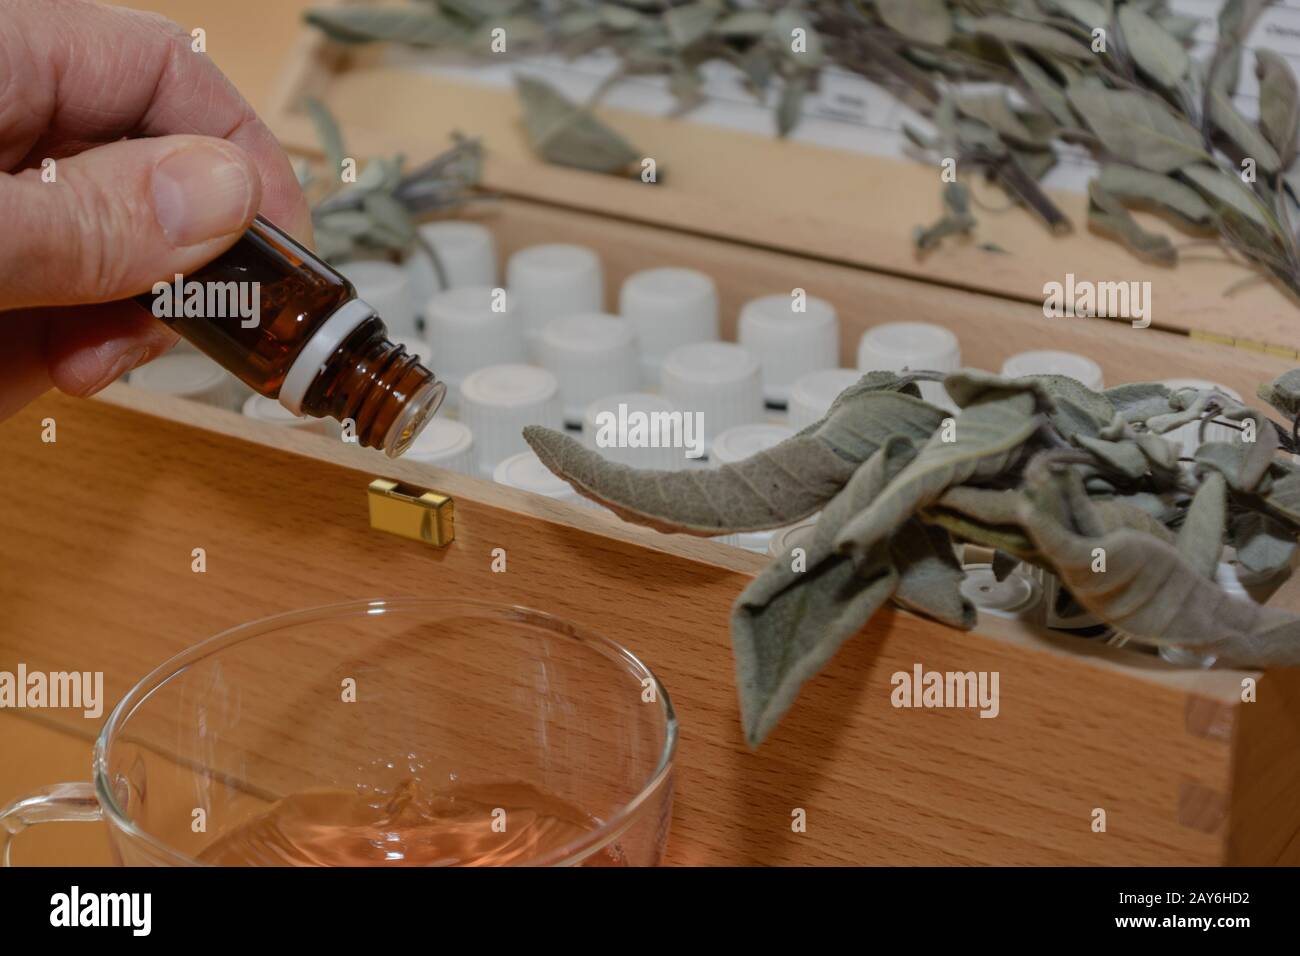 Braune Arzneiflasche über Flüssigkeit - Salbei und andere Arzneiflaschen im Hintergrund Stockfoto